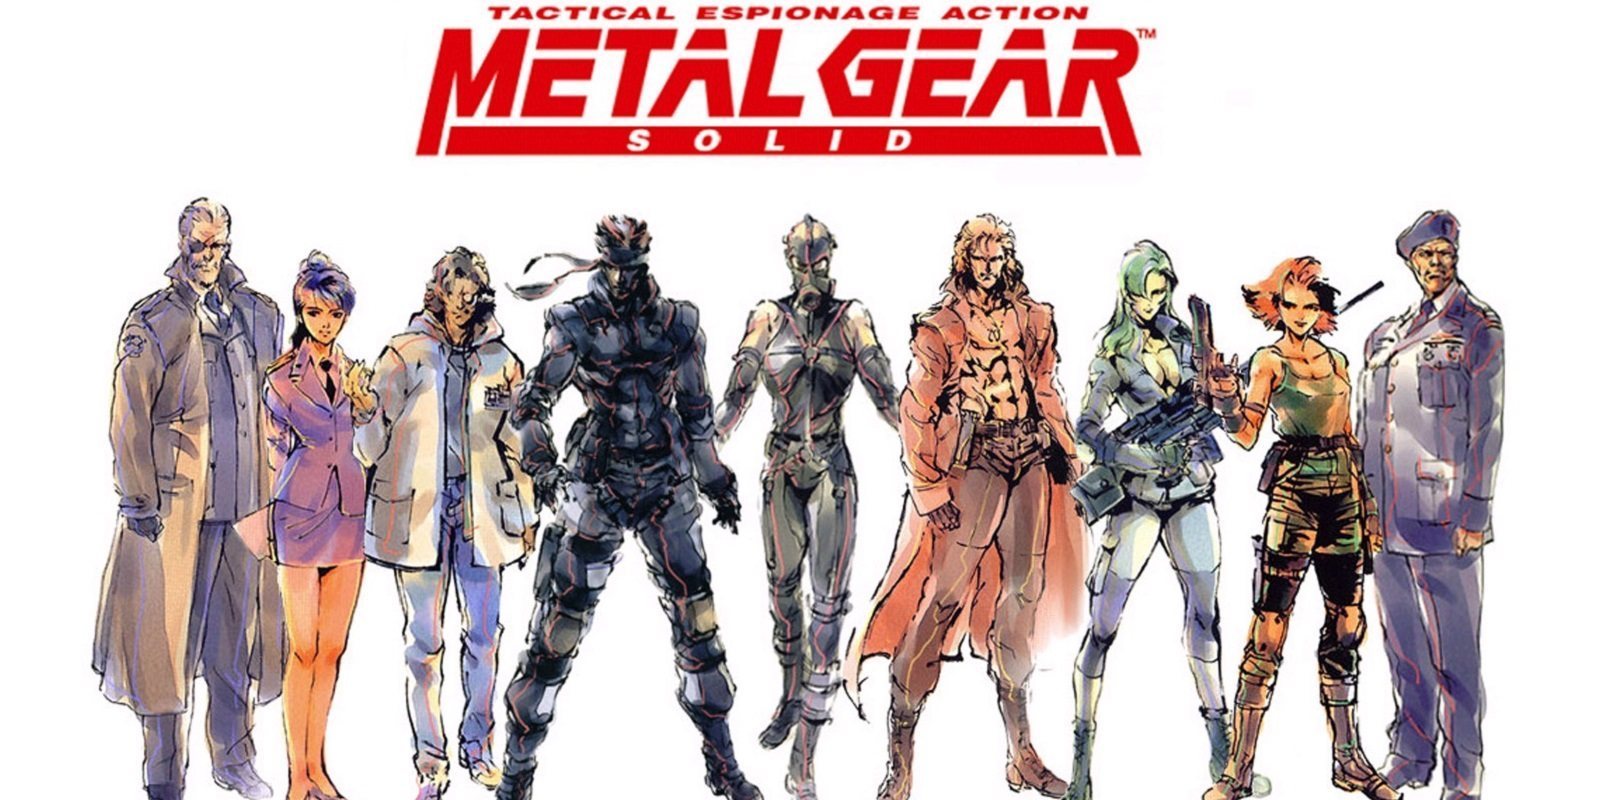 Anunciada una atracción de 'Metal Gear Solid' para celebrar su 20 aniversario